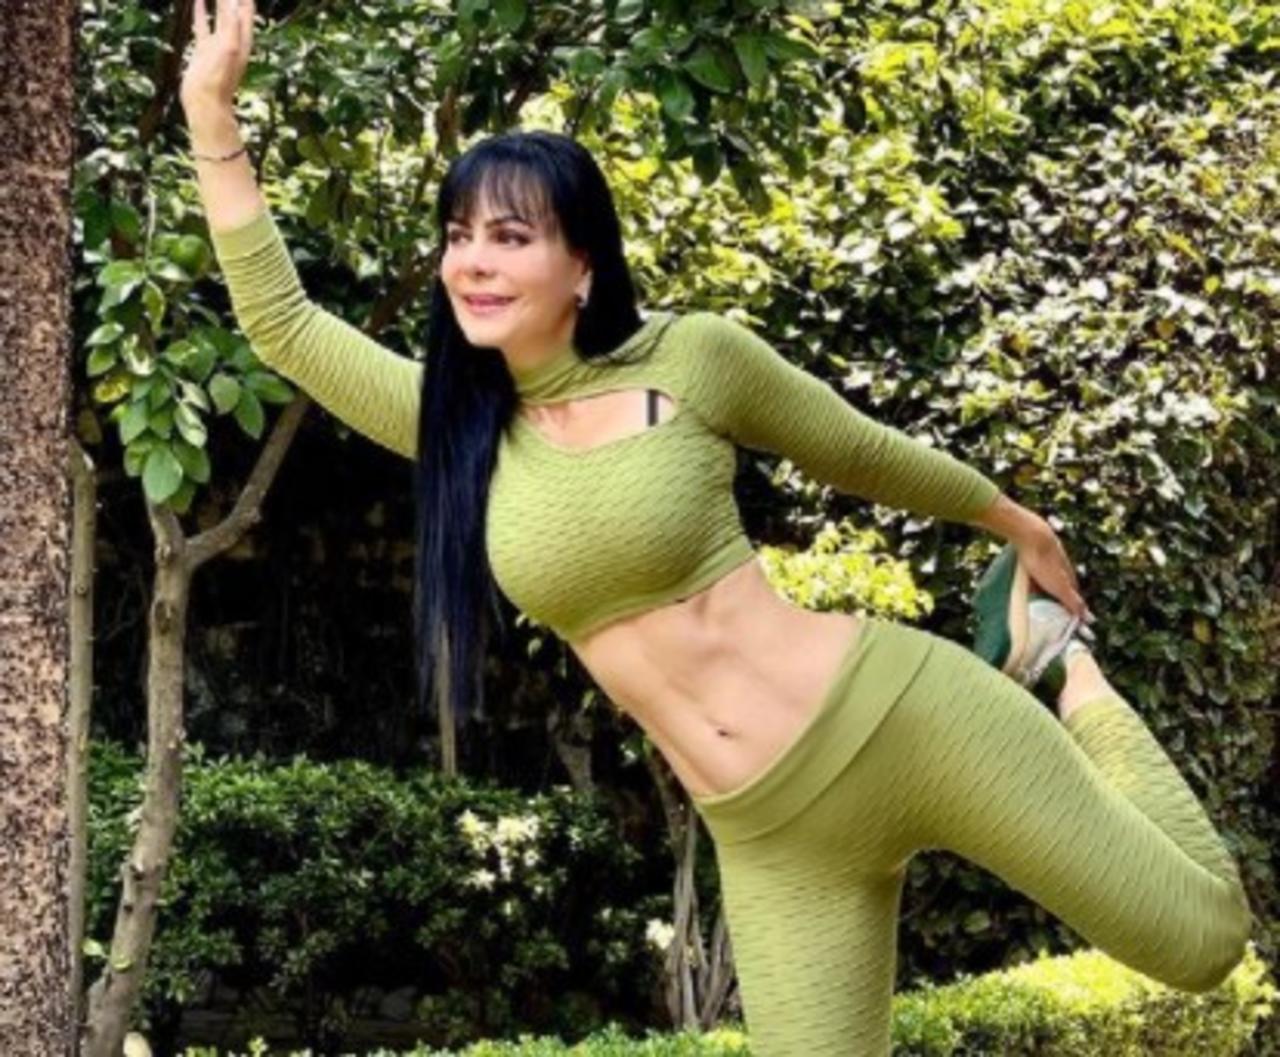 Con un entallado atuendo 'fit', la guapa actriz y bailarina, Maribel Guardia, deslumbró a sus miles de seguidores en Instagram con su figura a los 62 años de edad.